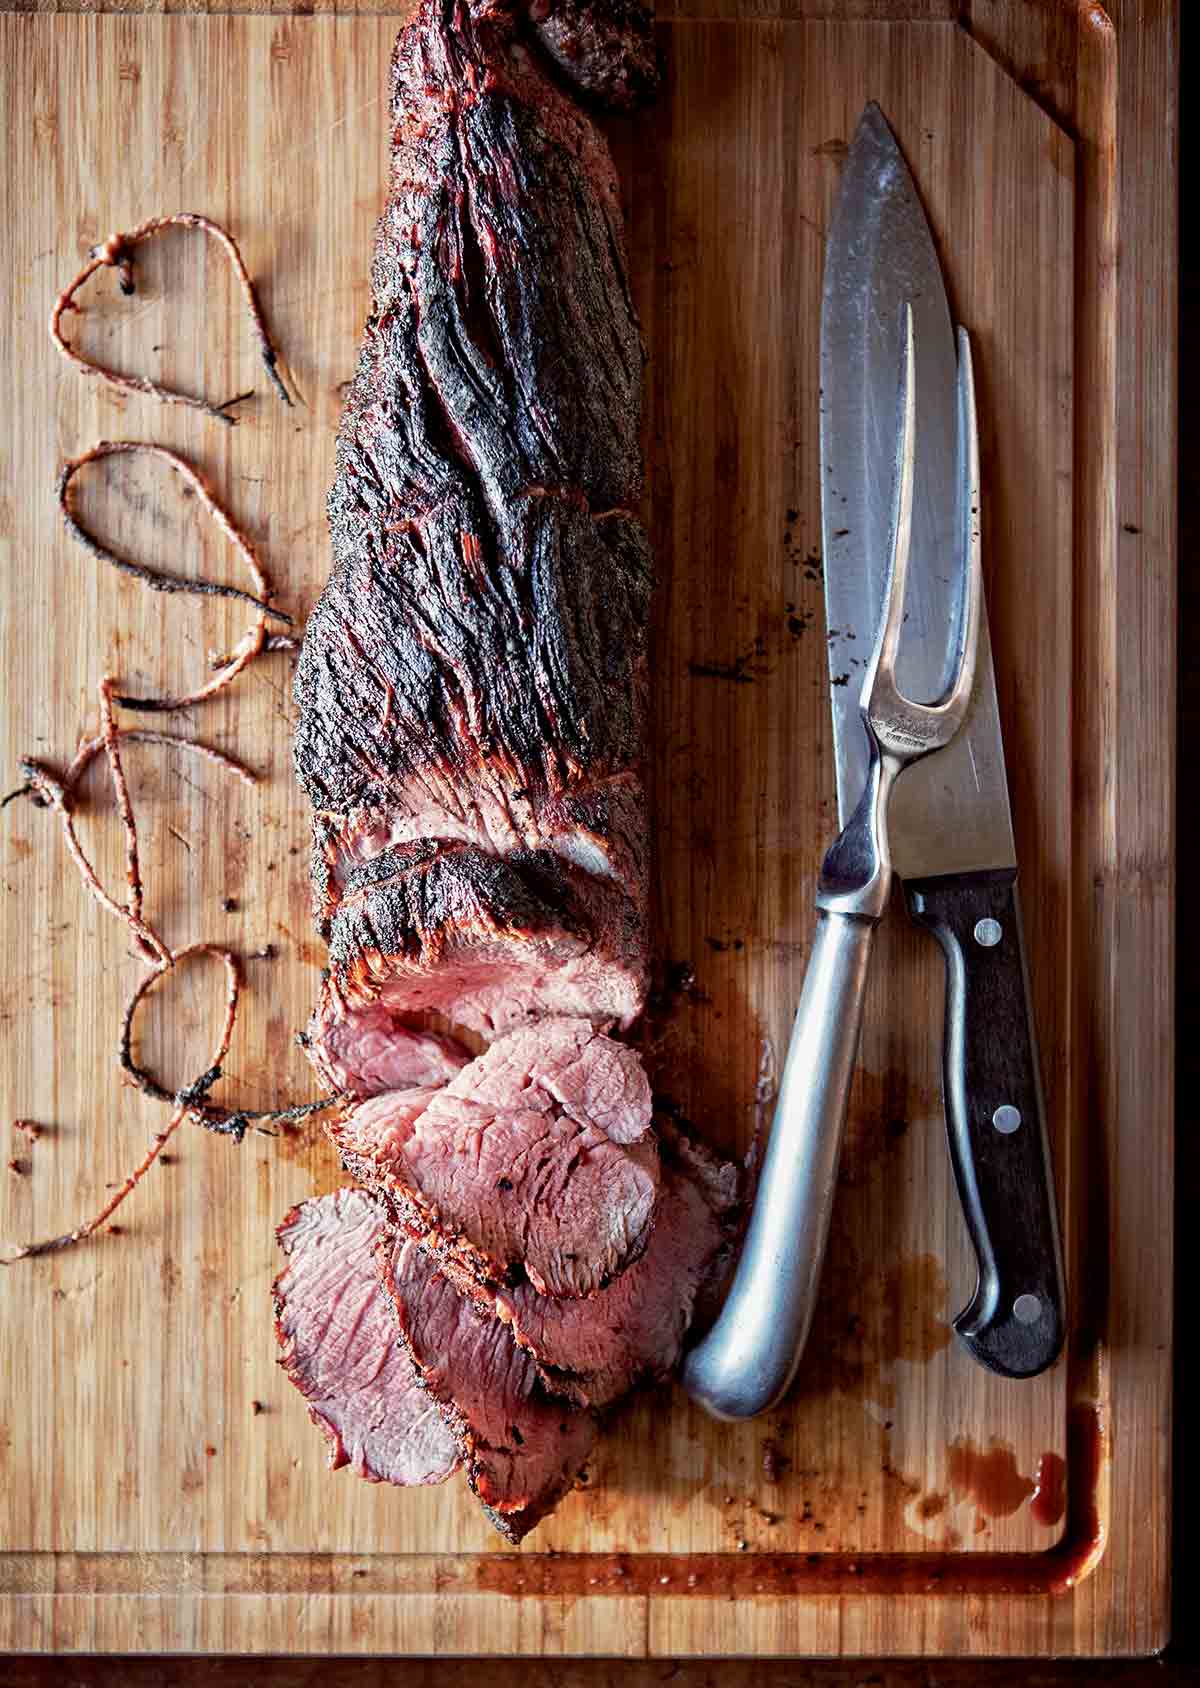 قطعة لحم بقري كاملة مشوية ، مقطعة جزئياً على لوح تقطيع خشبي مع سكين وشوكة لحم وخيوط بجانبها.